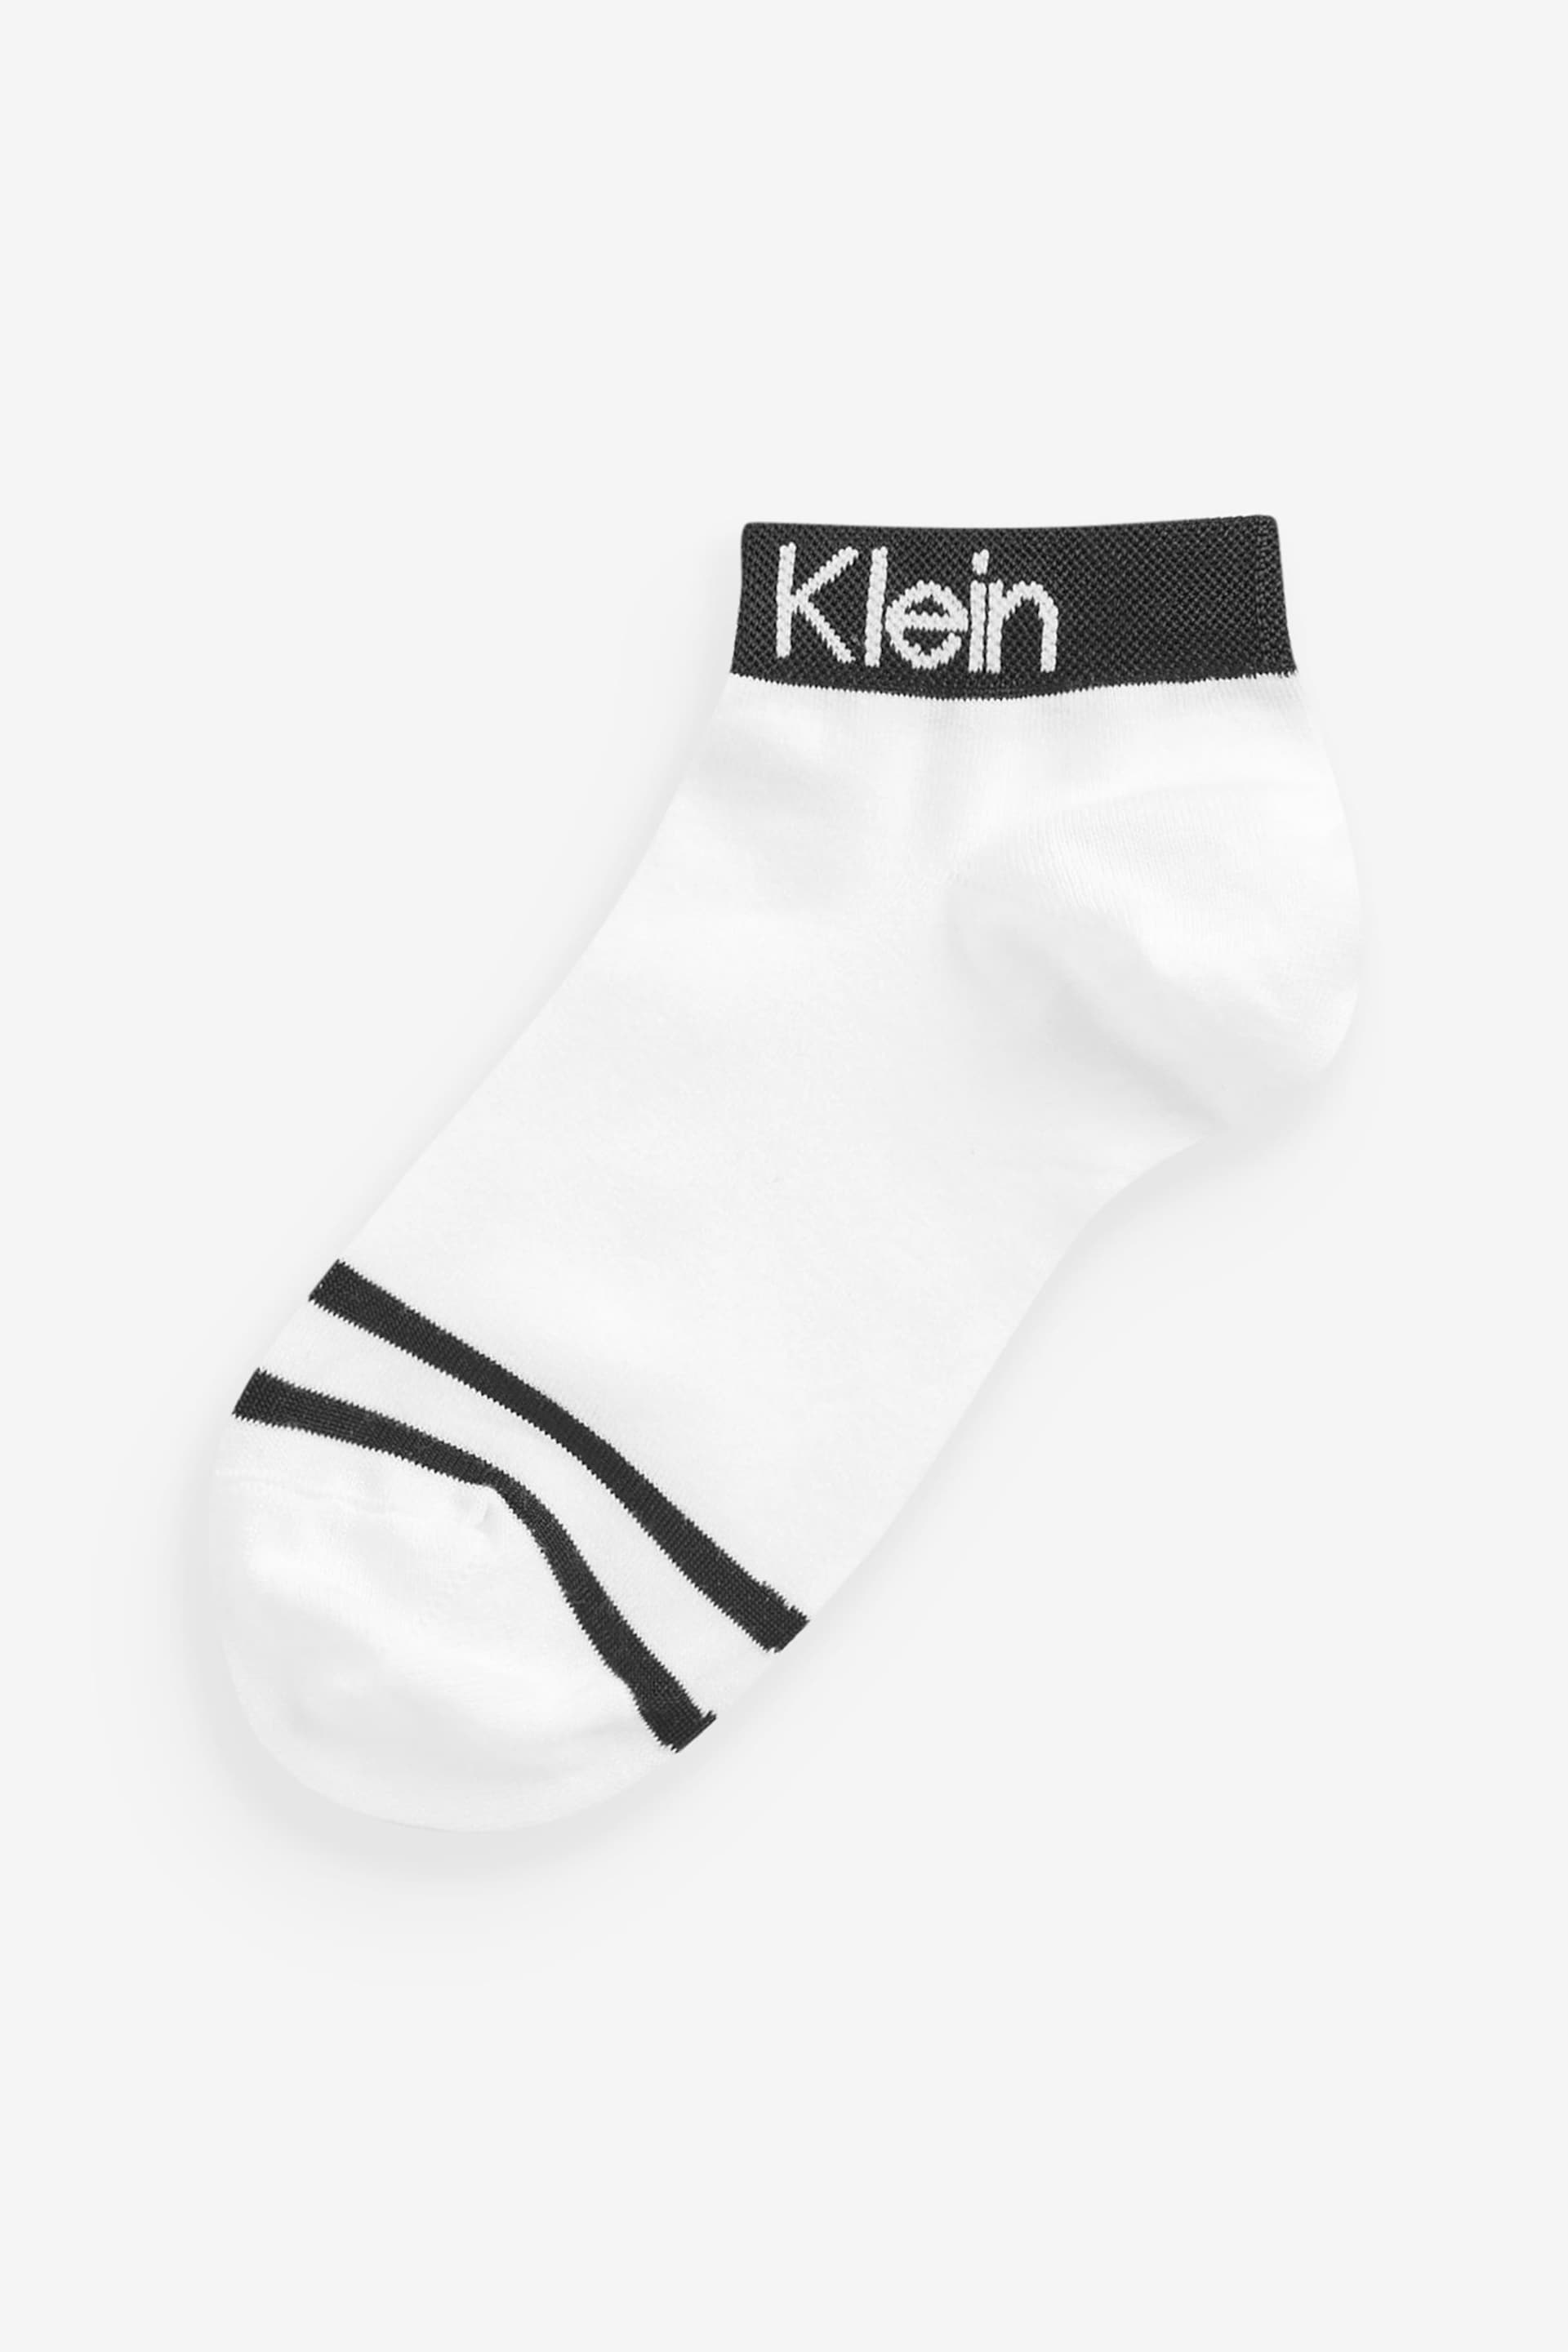 Calvin Klein White Logo Socks 2 Pack - Image 3 of 4